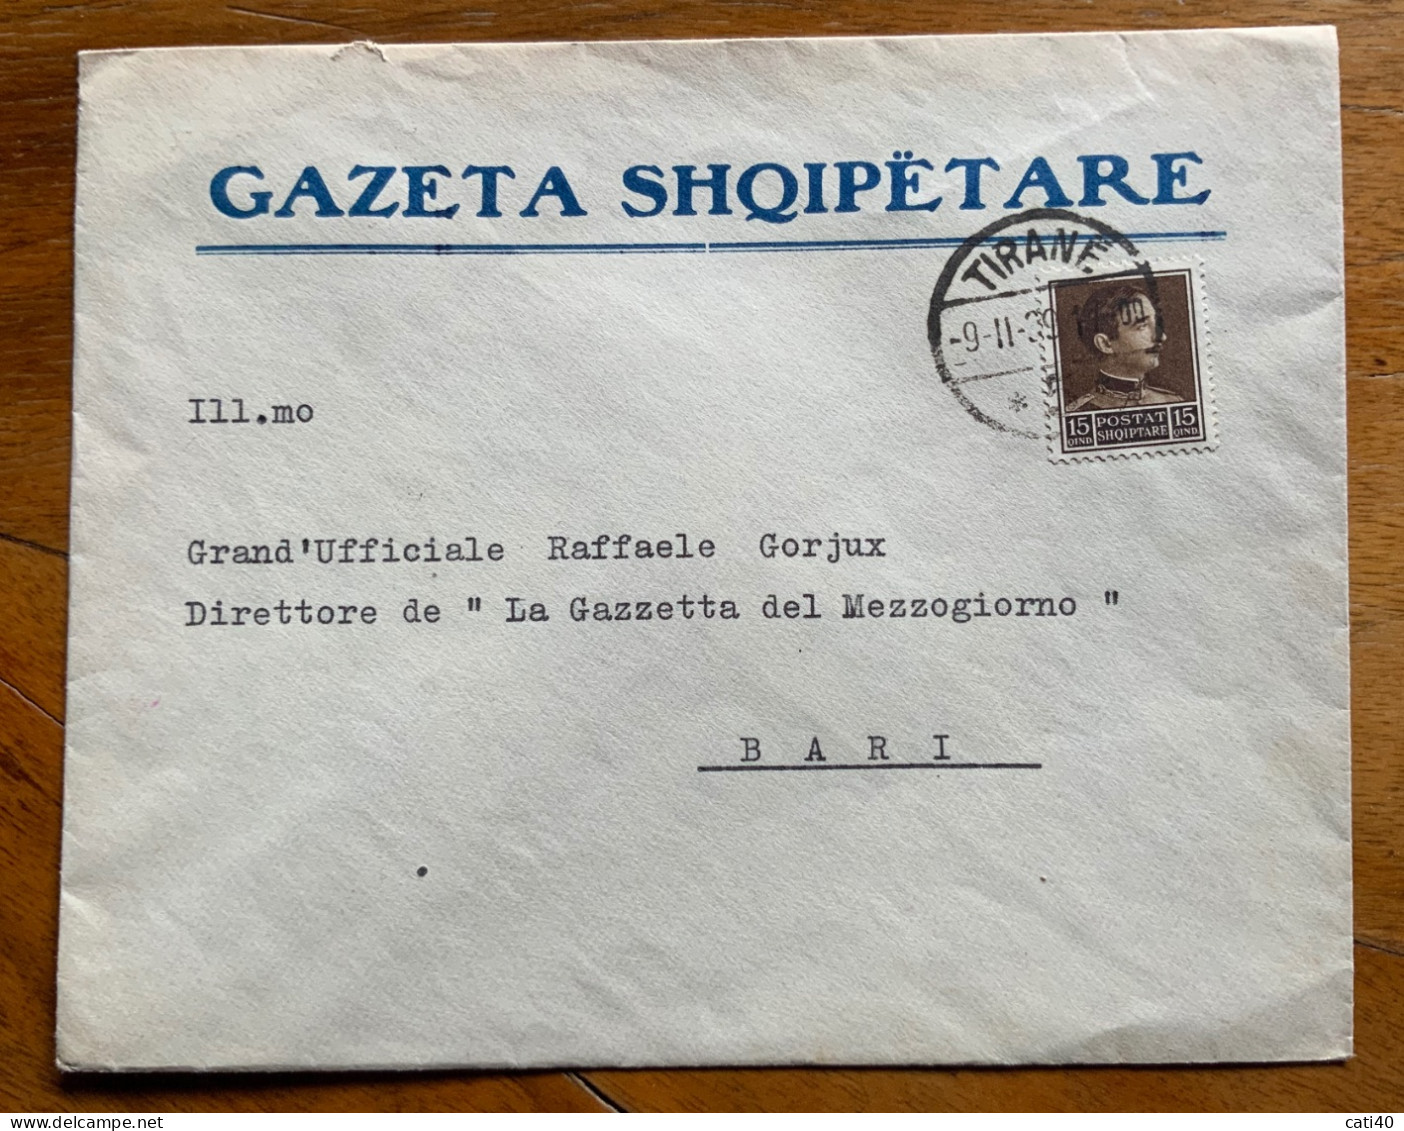 ALBANIA - GAZETA  SHQIPETARE - BUSTA  GIORNALE DA TIRANA 9/11/39 A RAFFAELE GORJUX DIRETTORE GAZZETTA DEL MEZZOGIORNO - Albanie